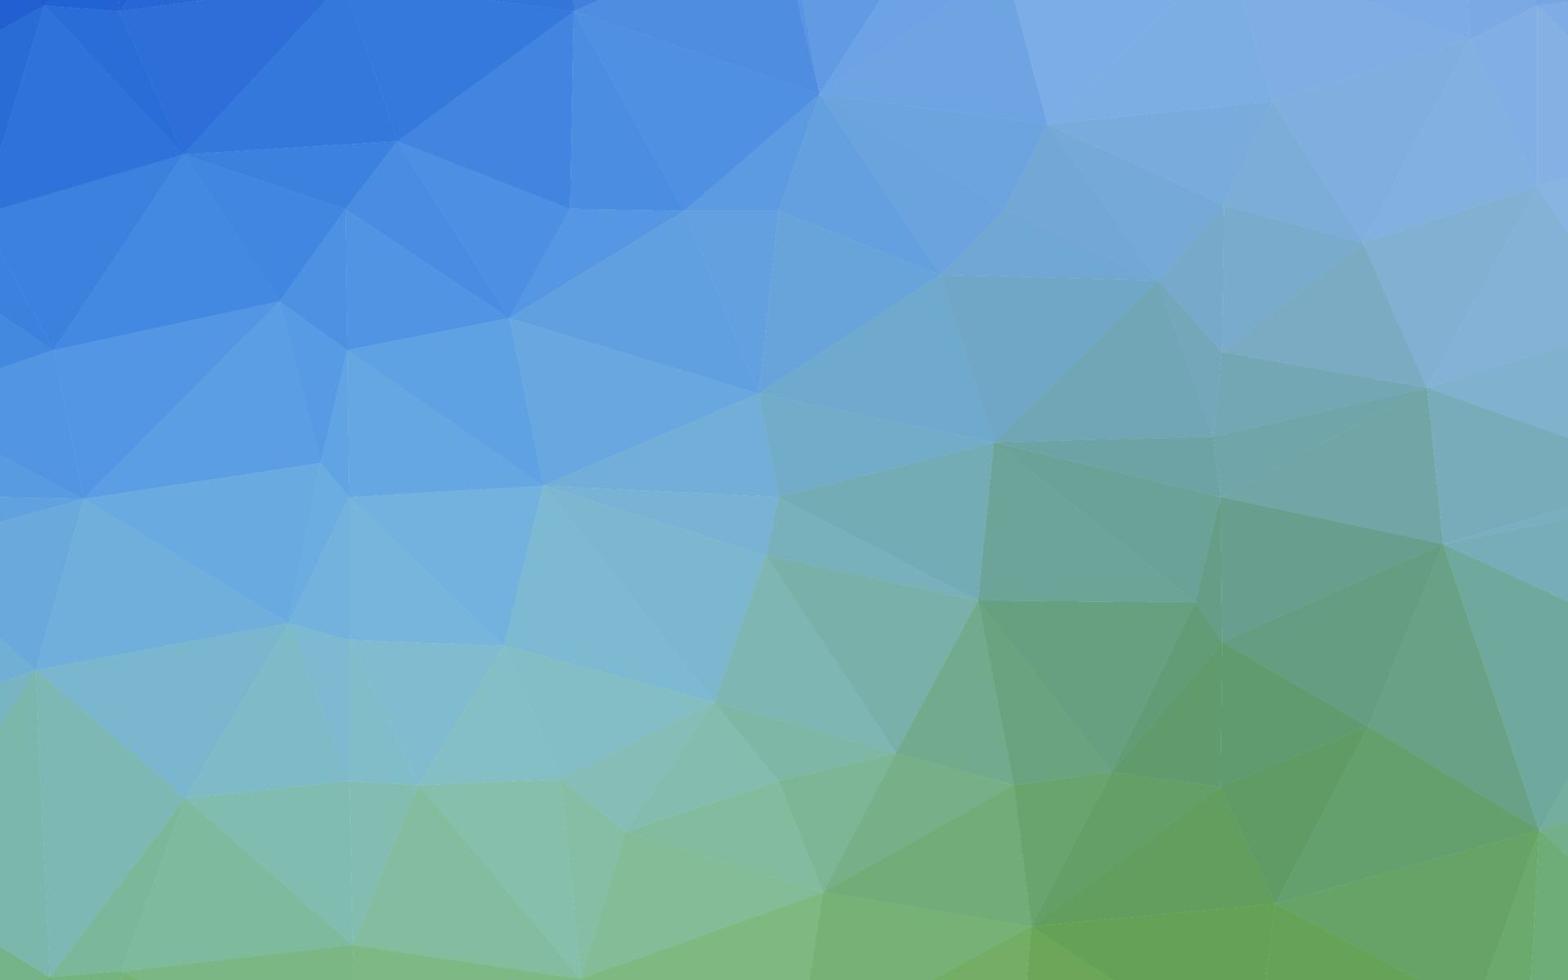 couverture polygonale abstraite de vecteur bleu clair, vert.